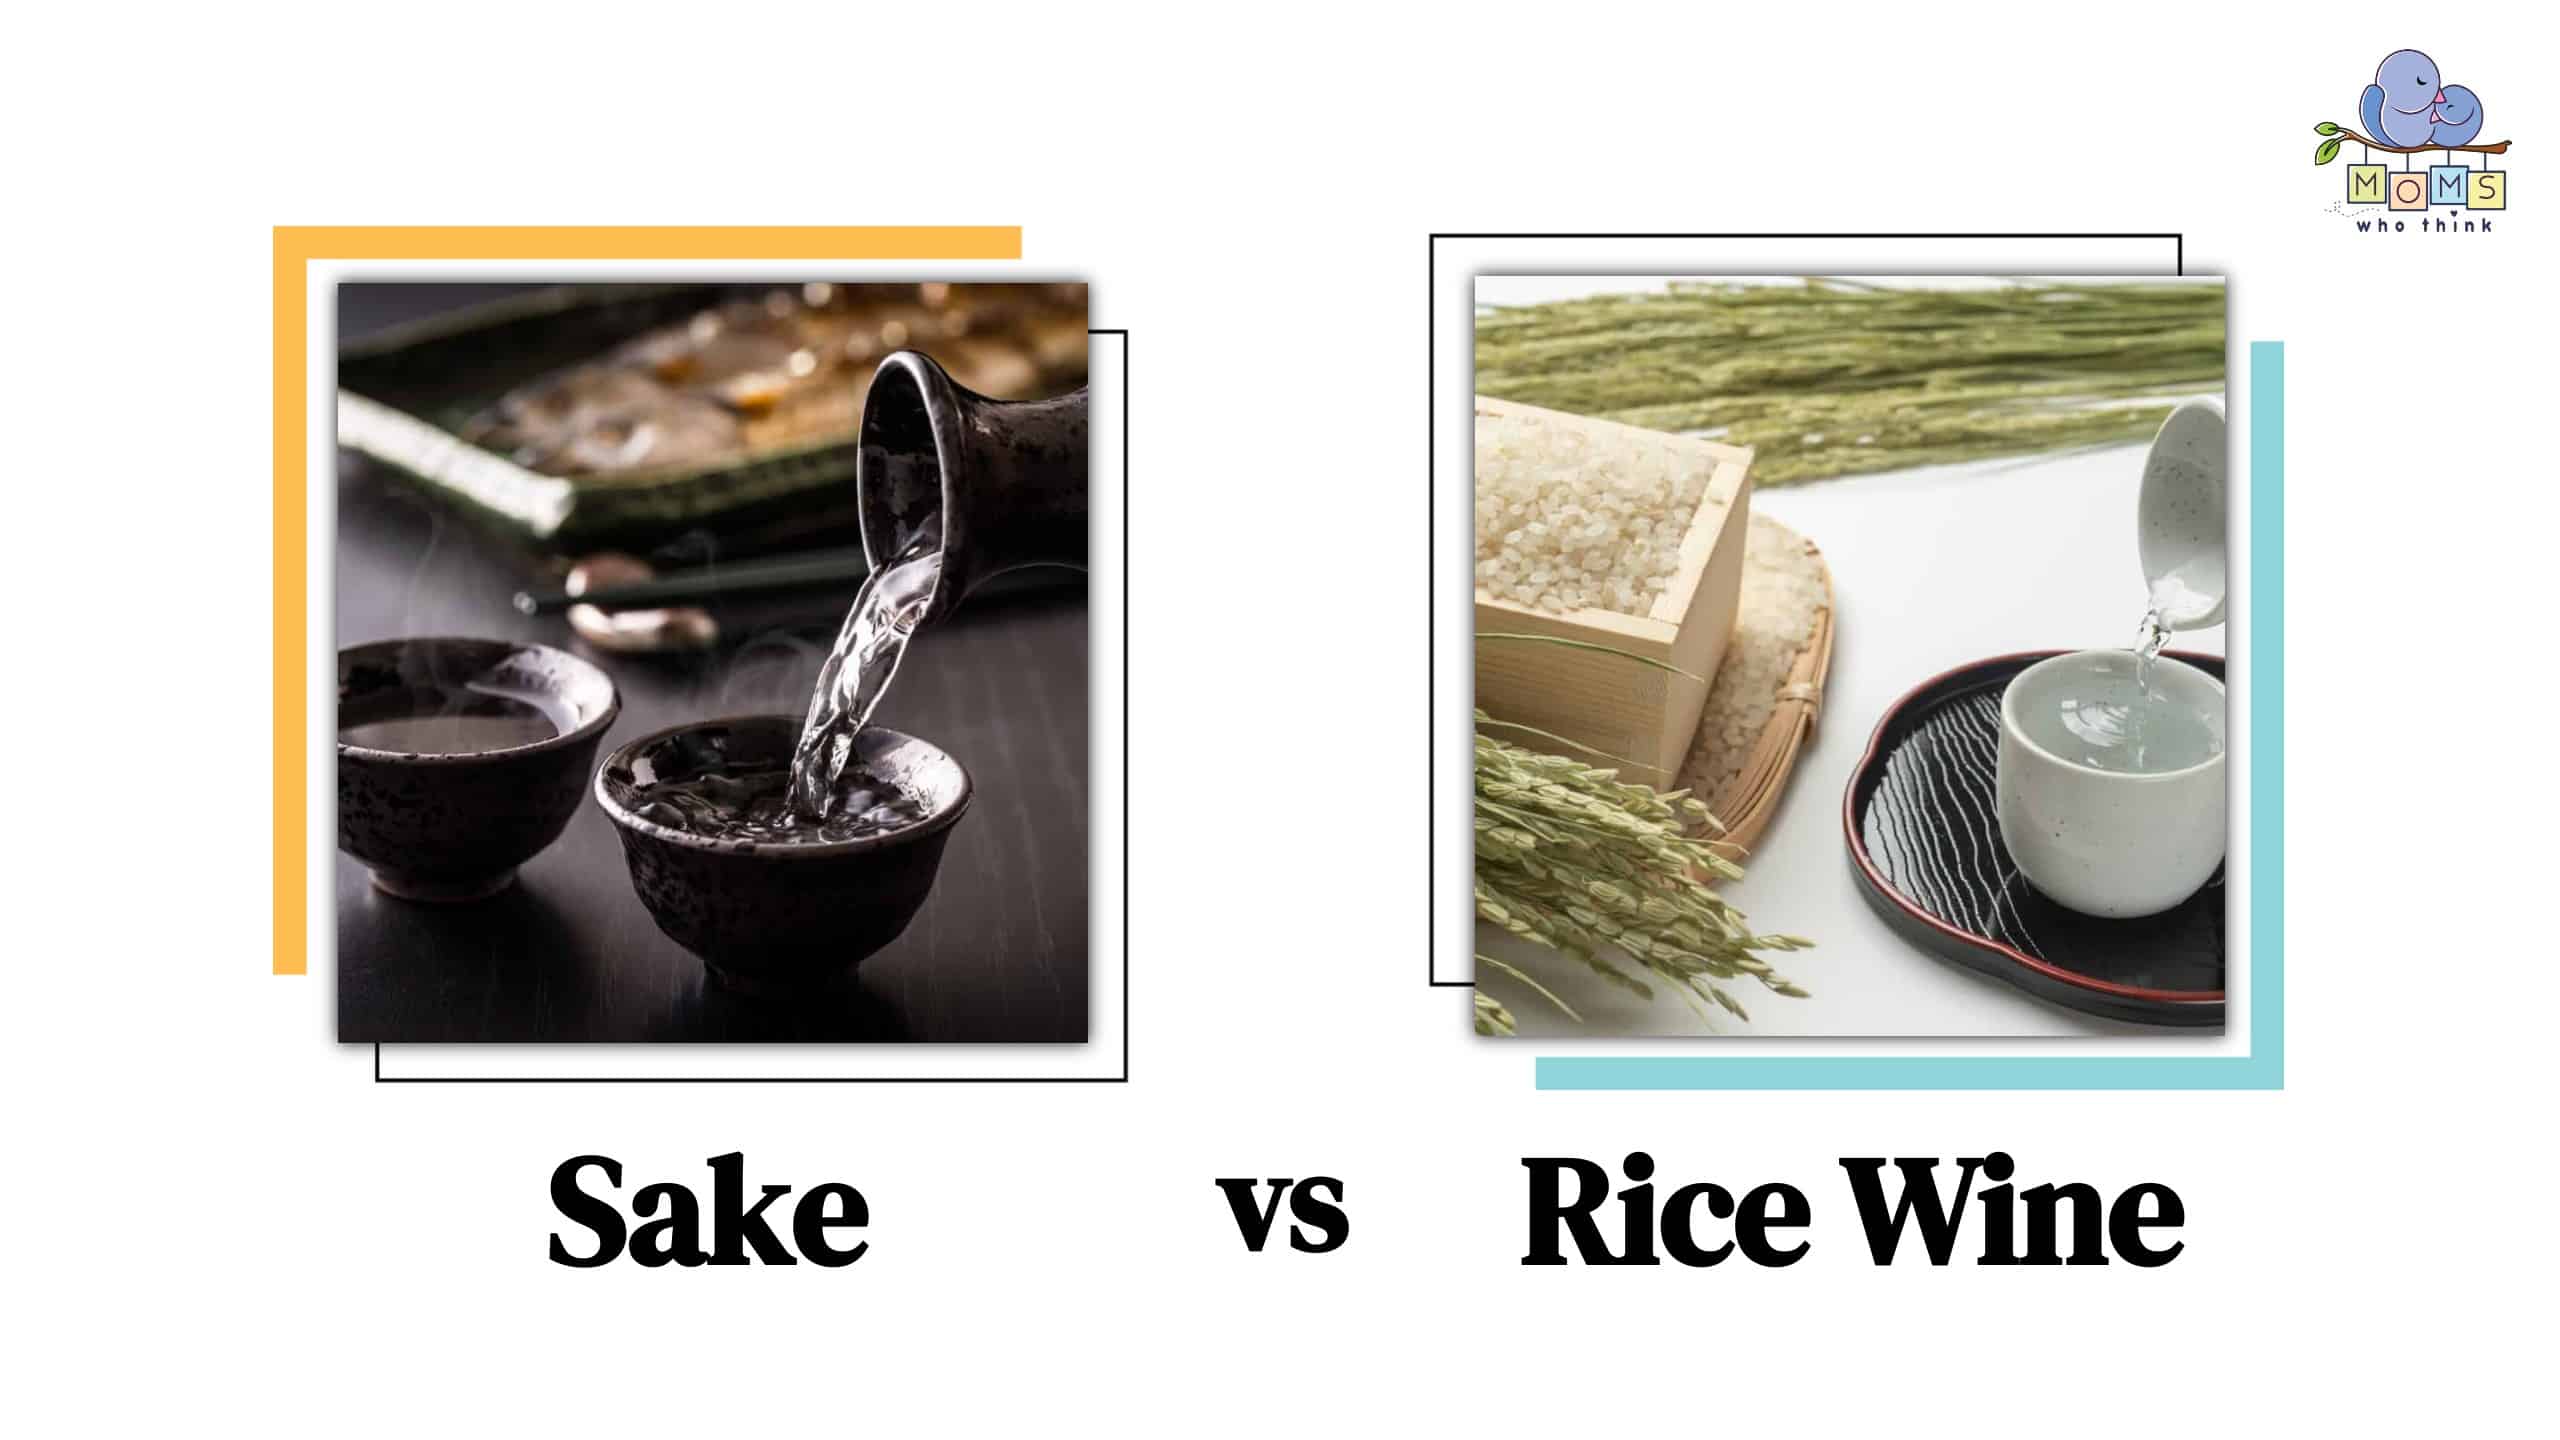 Sake vs Rice Wine